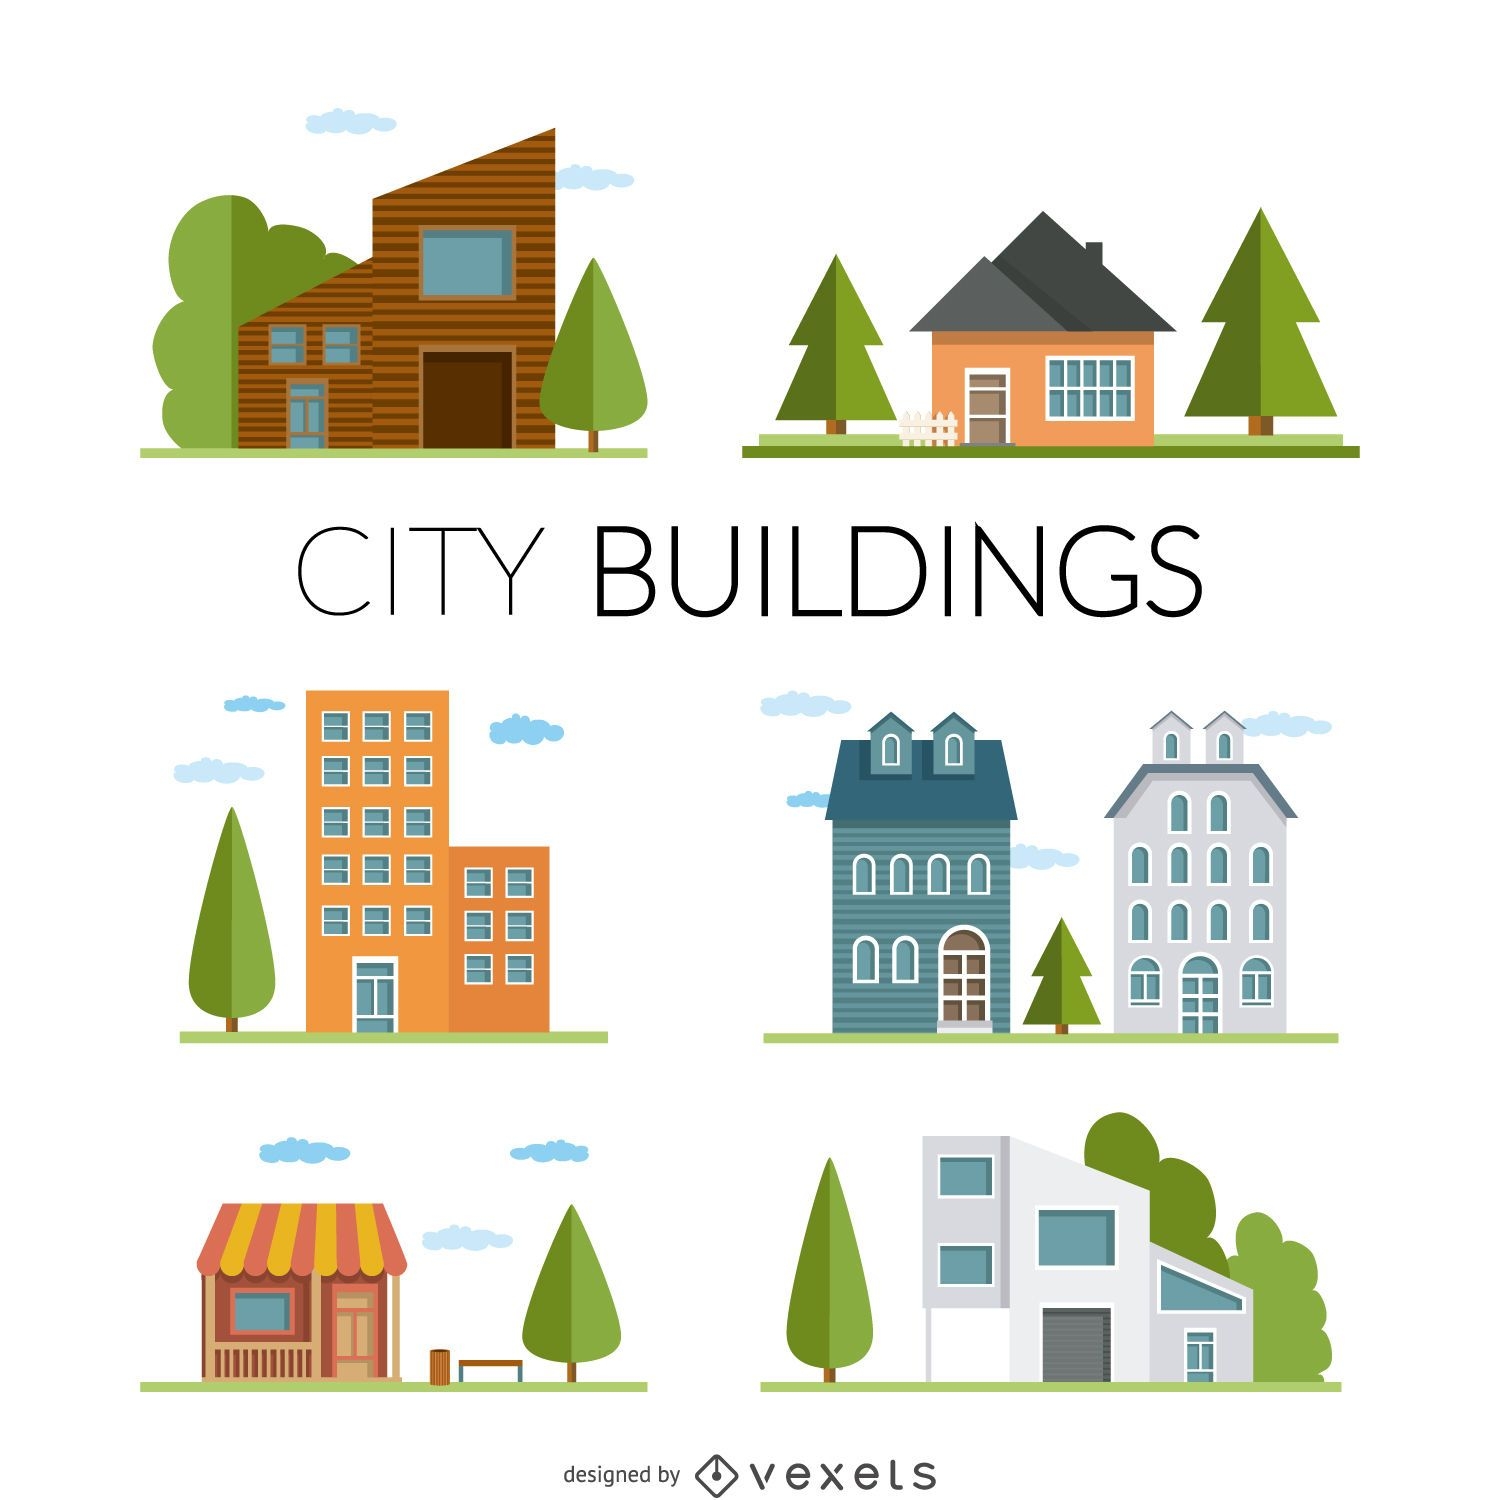 Ilustración de casas y edificios planos